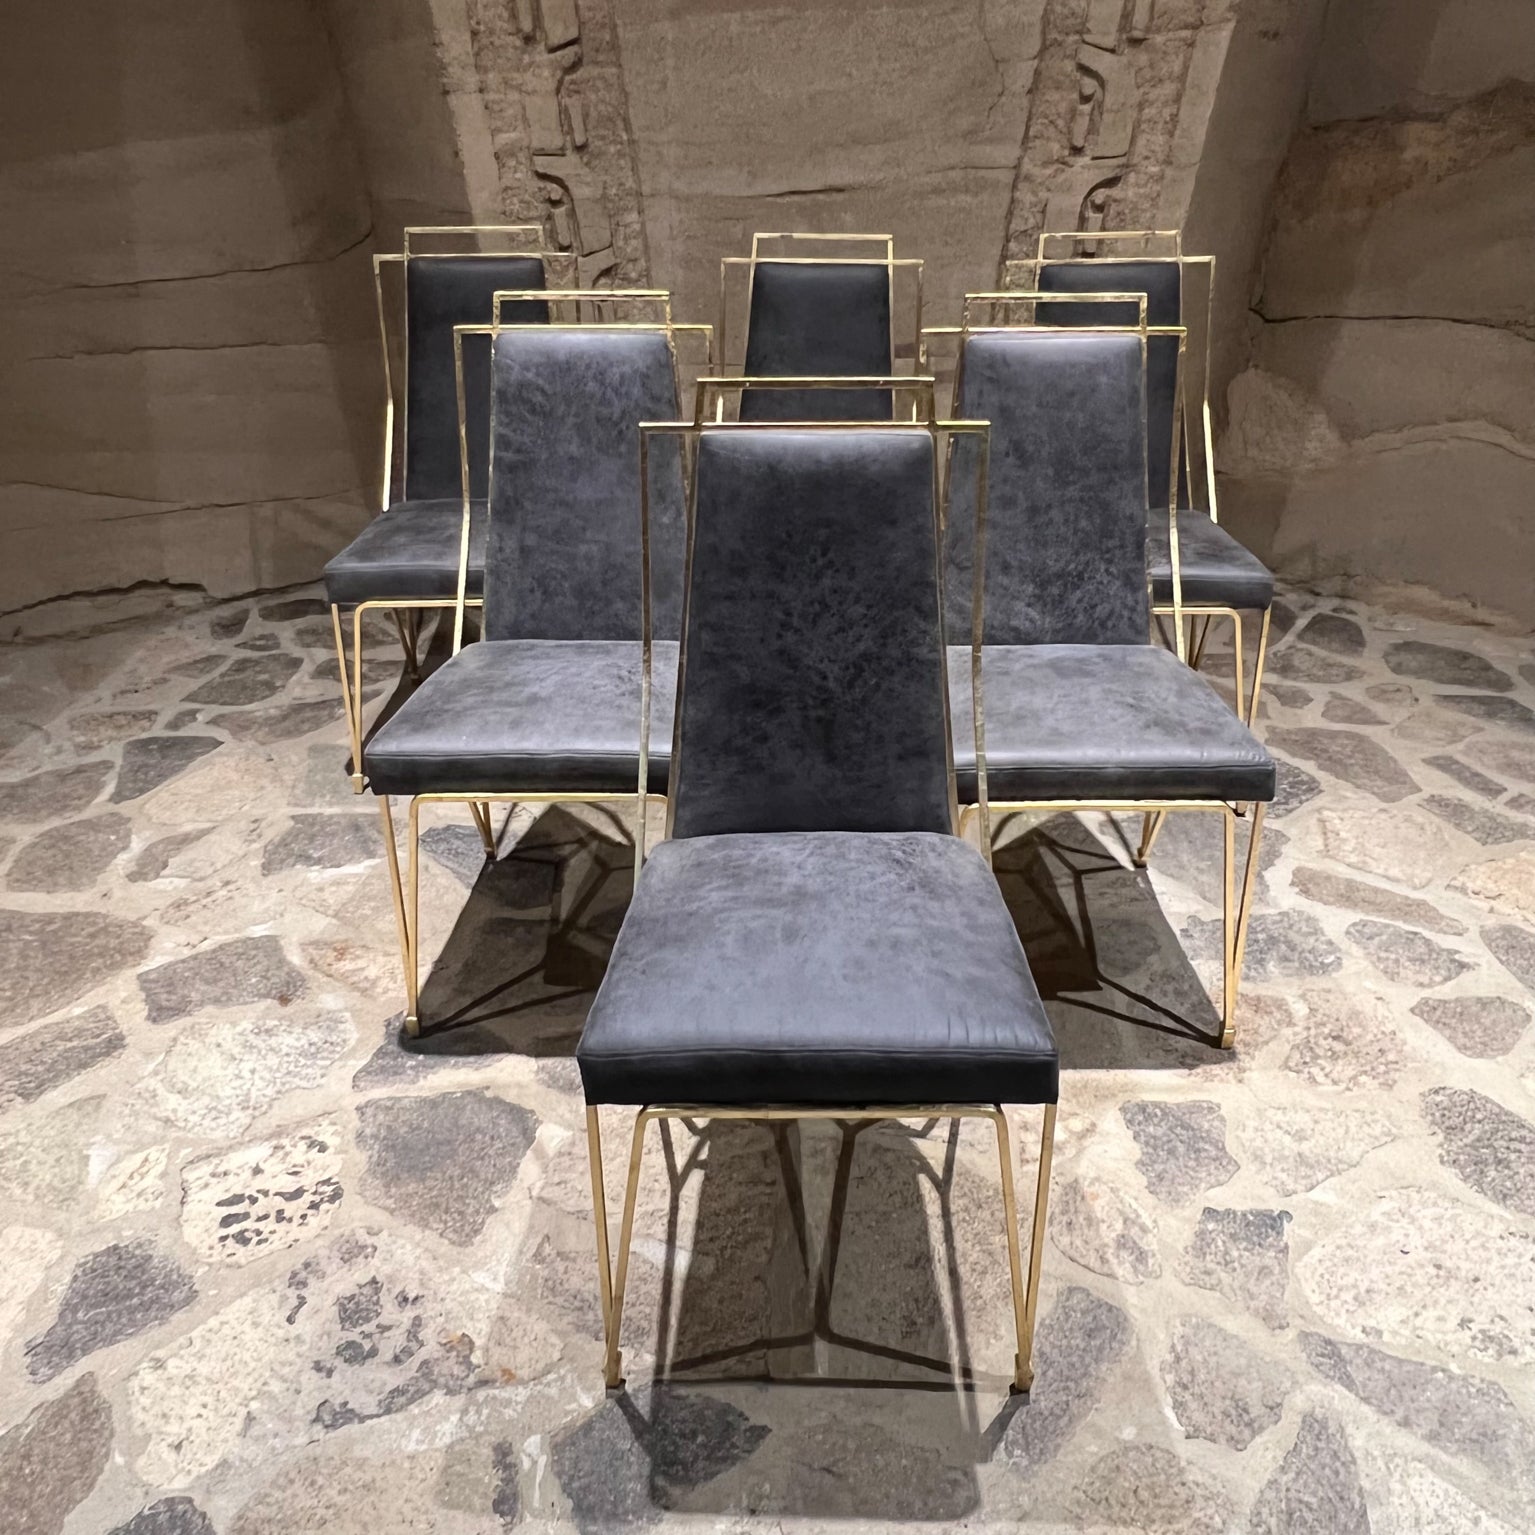 1950s Arturo Pani Modernisme mexicain Exquis ensemble de six chaises de salle à manger en feuille d'or en gris riche, Mexico City 
Non marqué. 
Mesures : 36 de hauteur x 22,75 de profondeur x 17,5 de largeur Siège 18,5 de hauteur
Vintage original